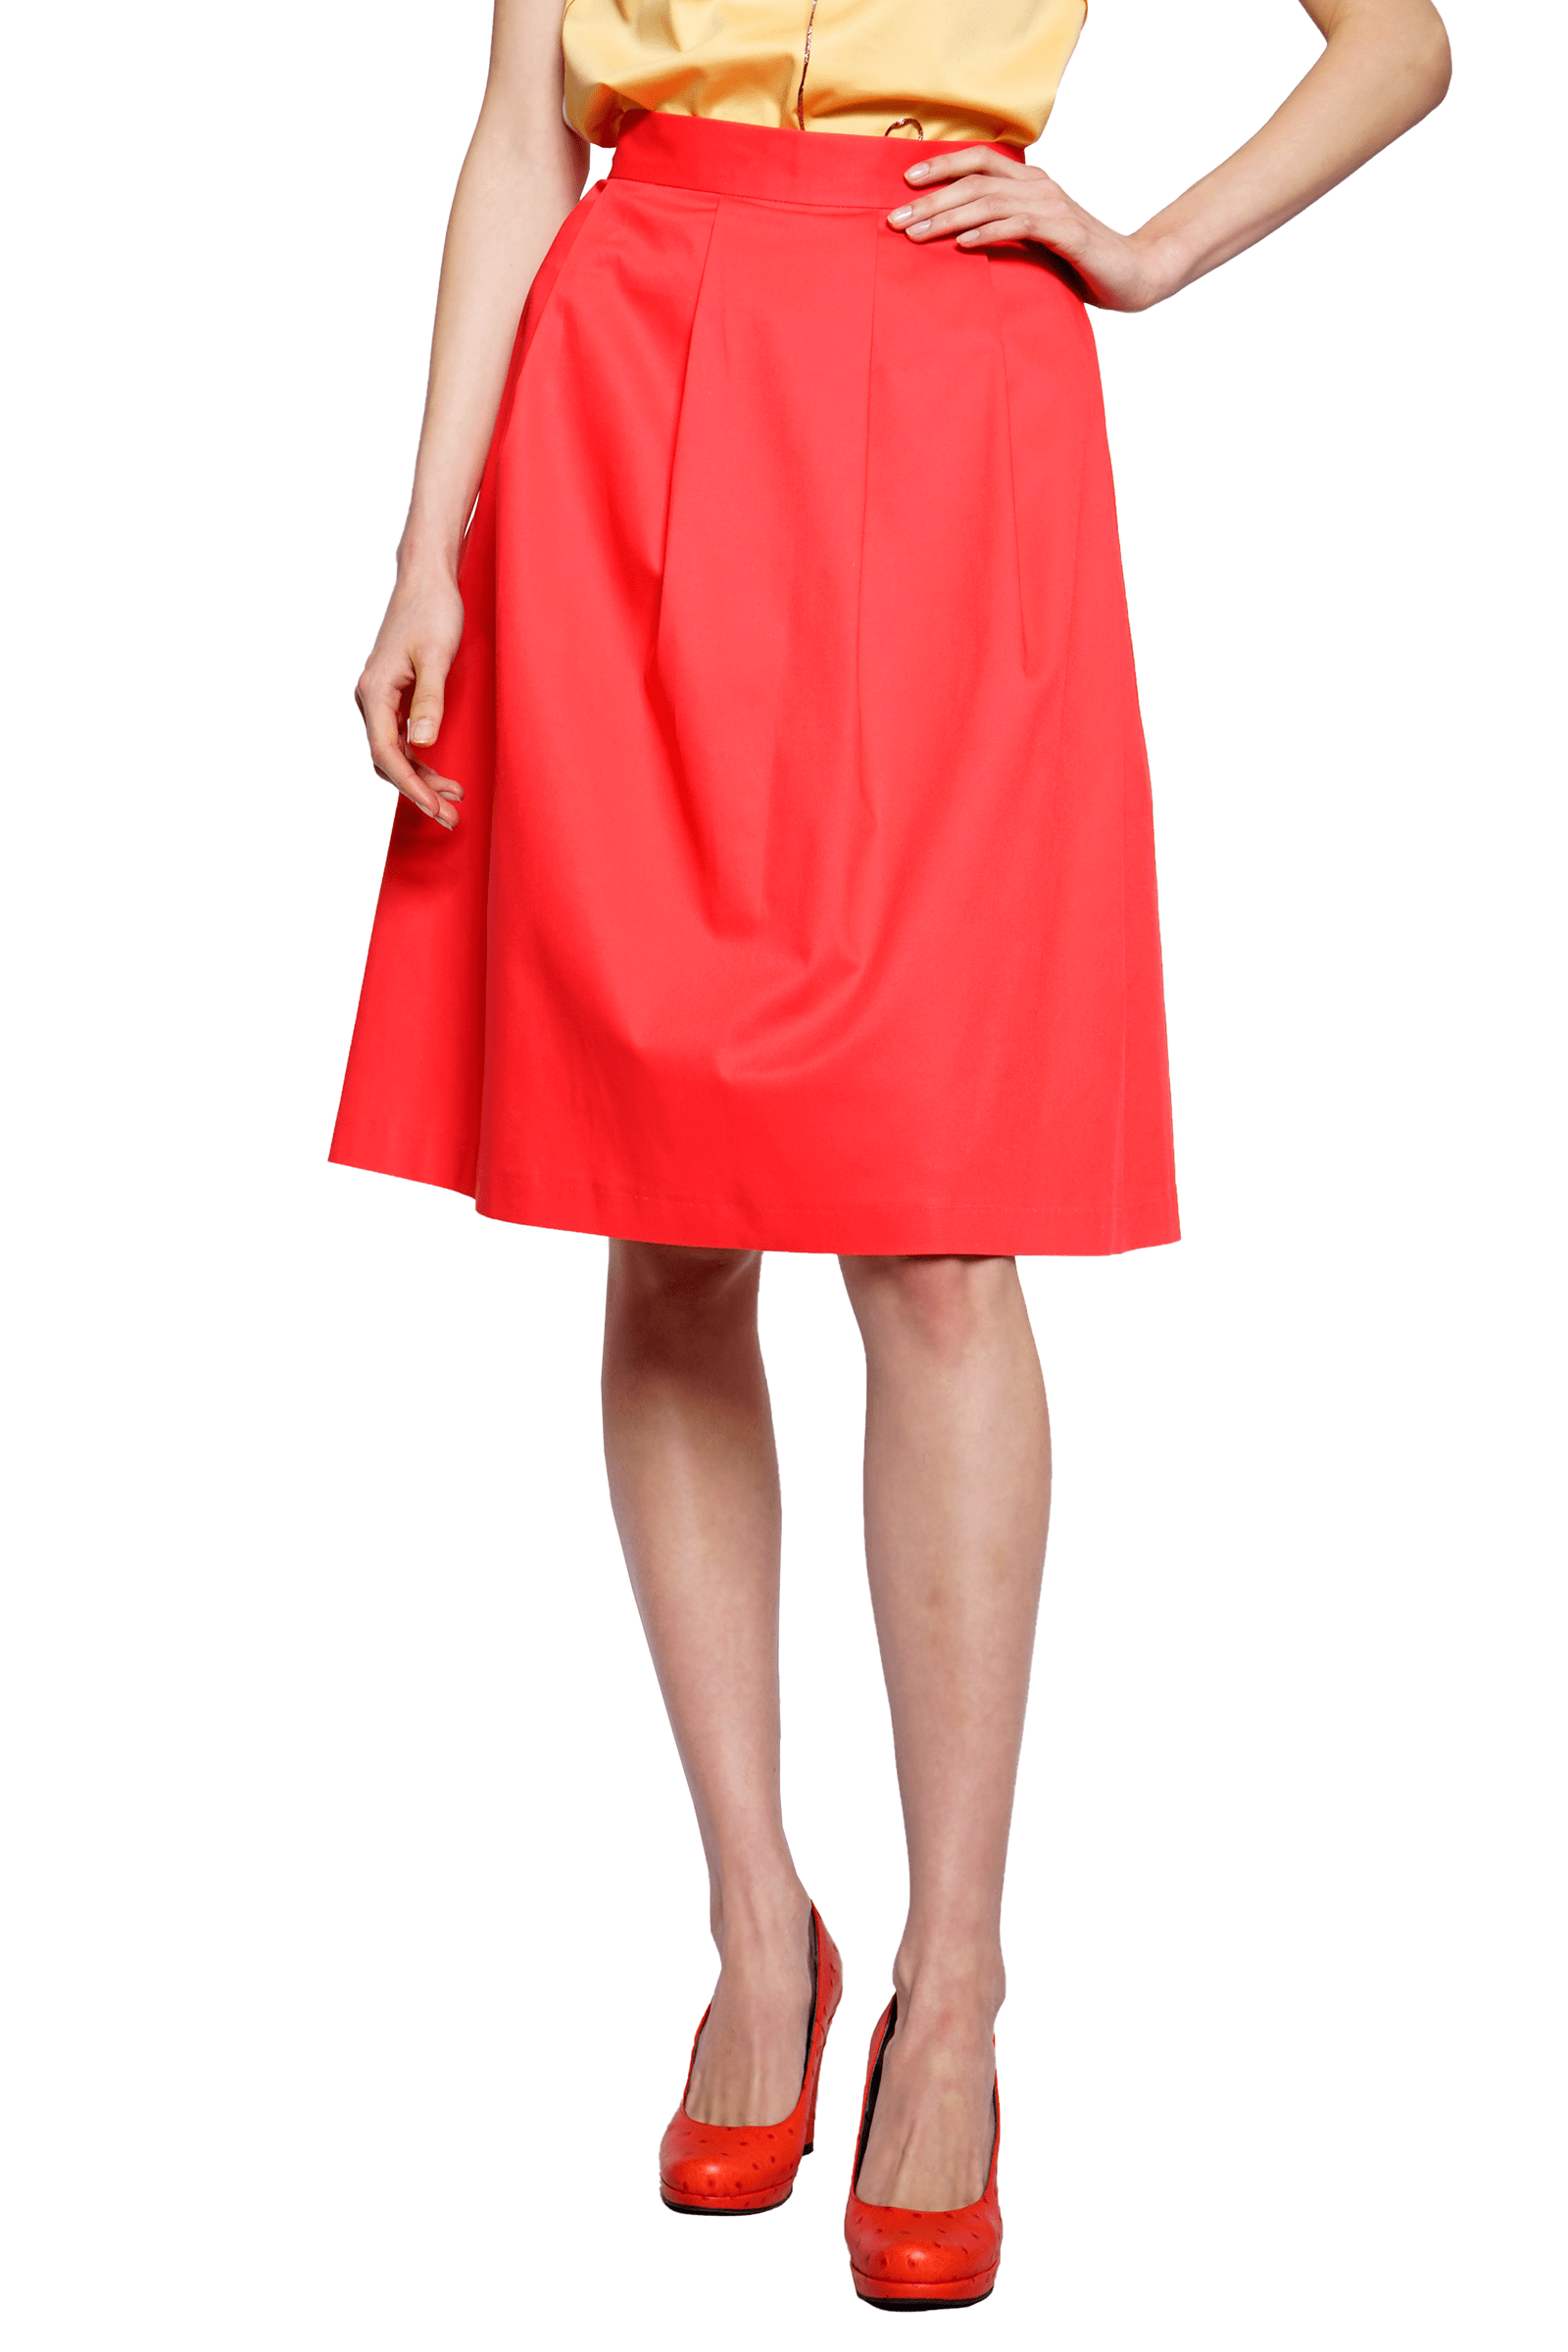 Red flared skirt